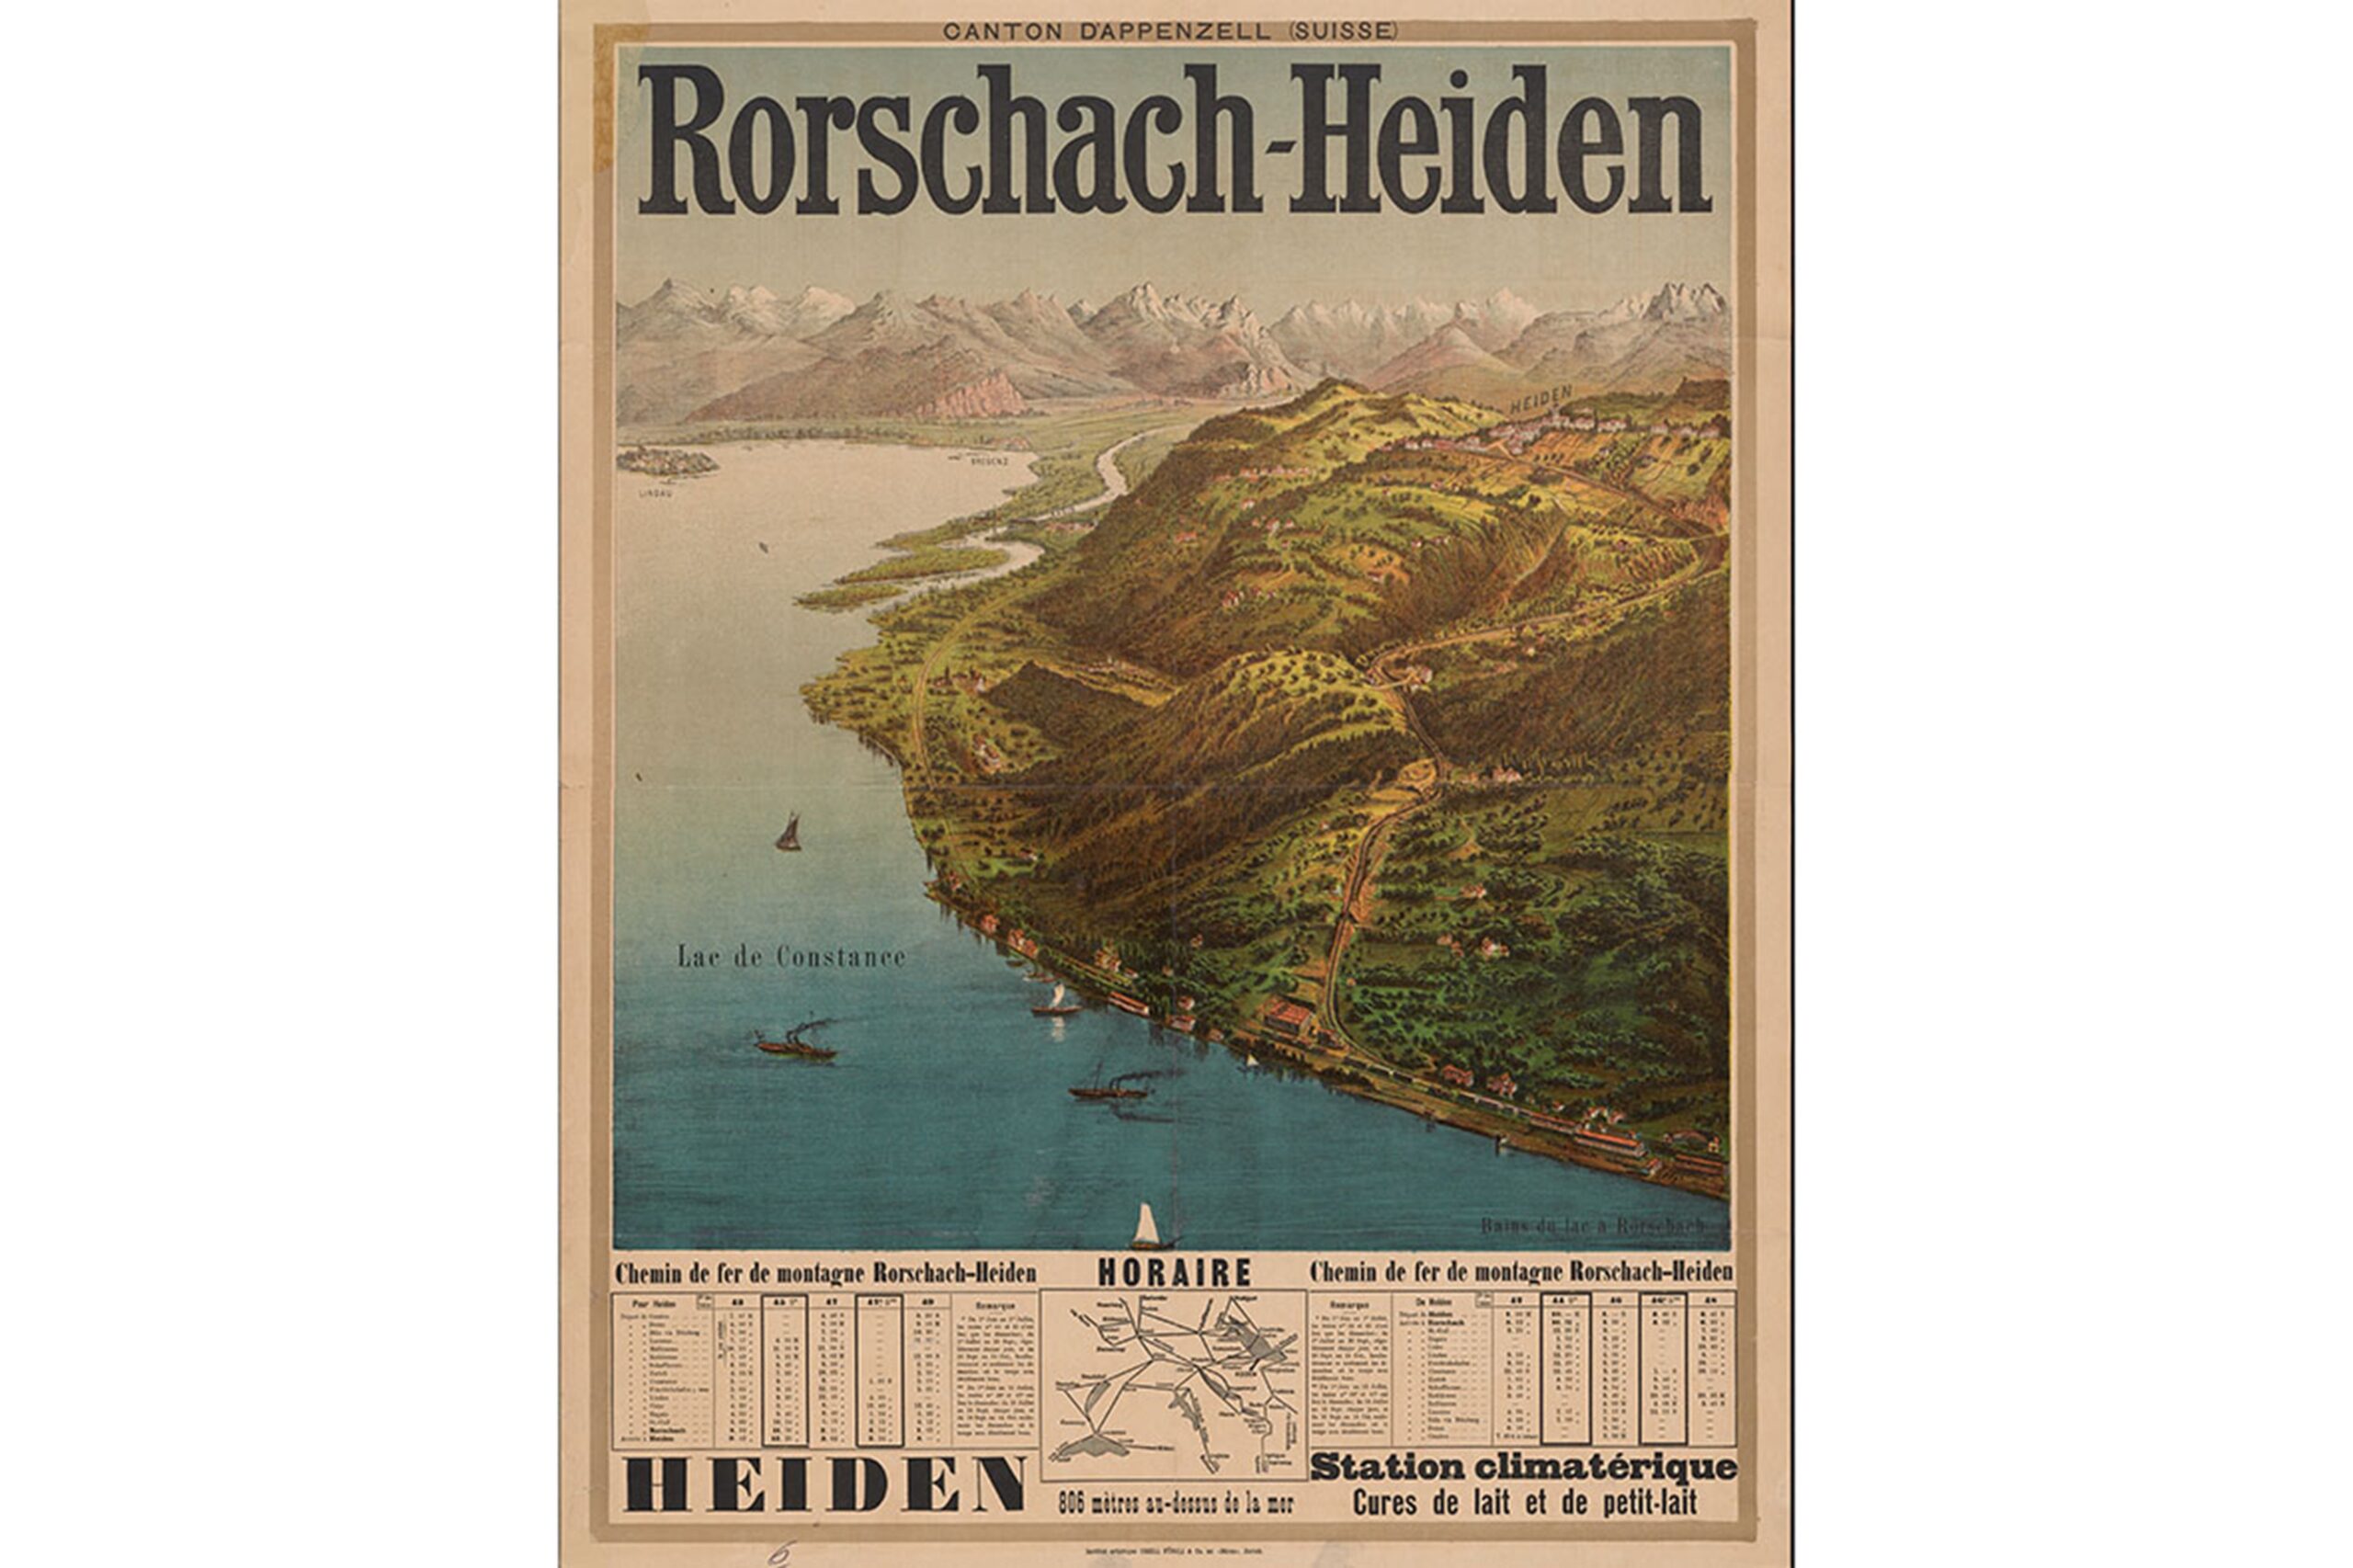 Canton dʼAppenzell (Suisse) Rorschach – Heiden mit Hinweis auf Molke-Kur, Plakat der Orell Füssli Holding AG 1890, ©SBB Historic